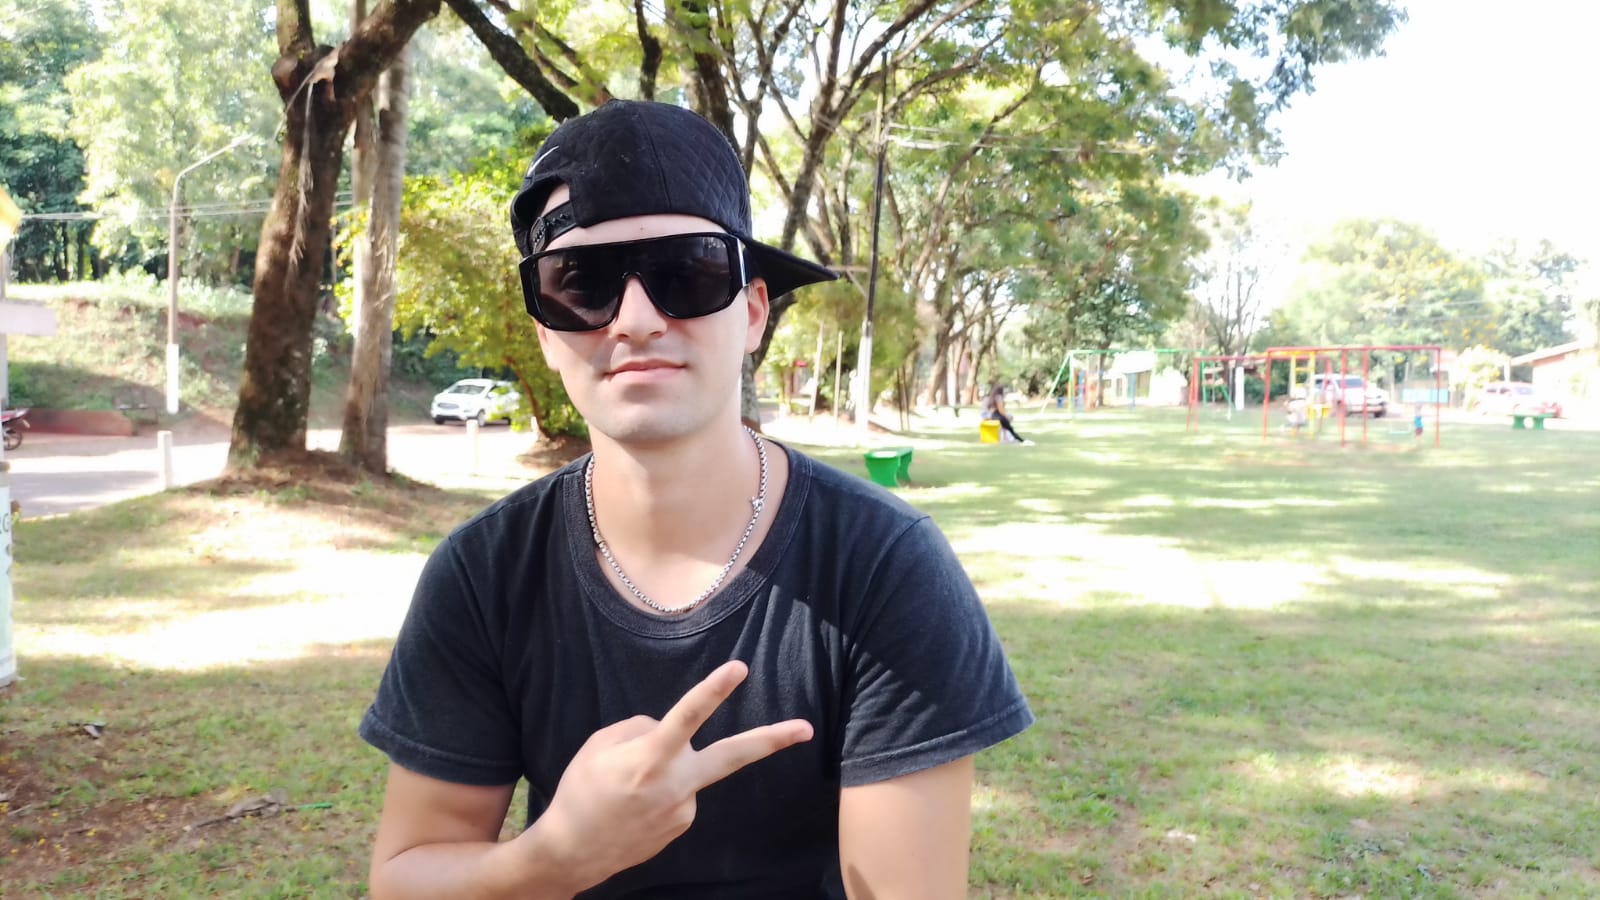 Chanty, el artista de reggaeton eldoradense está promocionando su nuevo video clip oficial